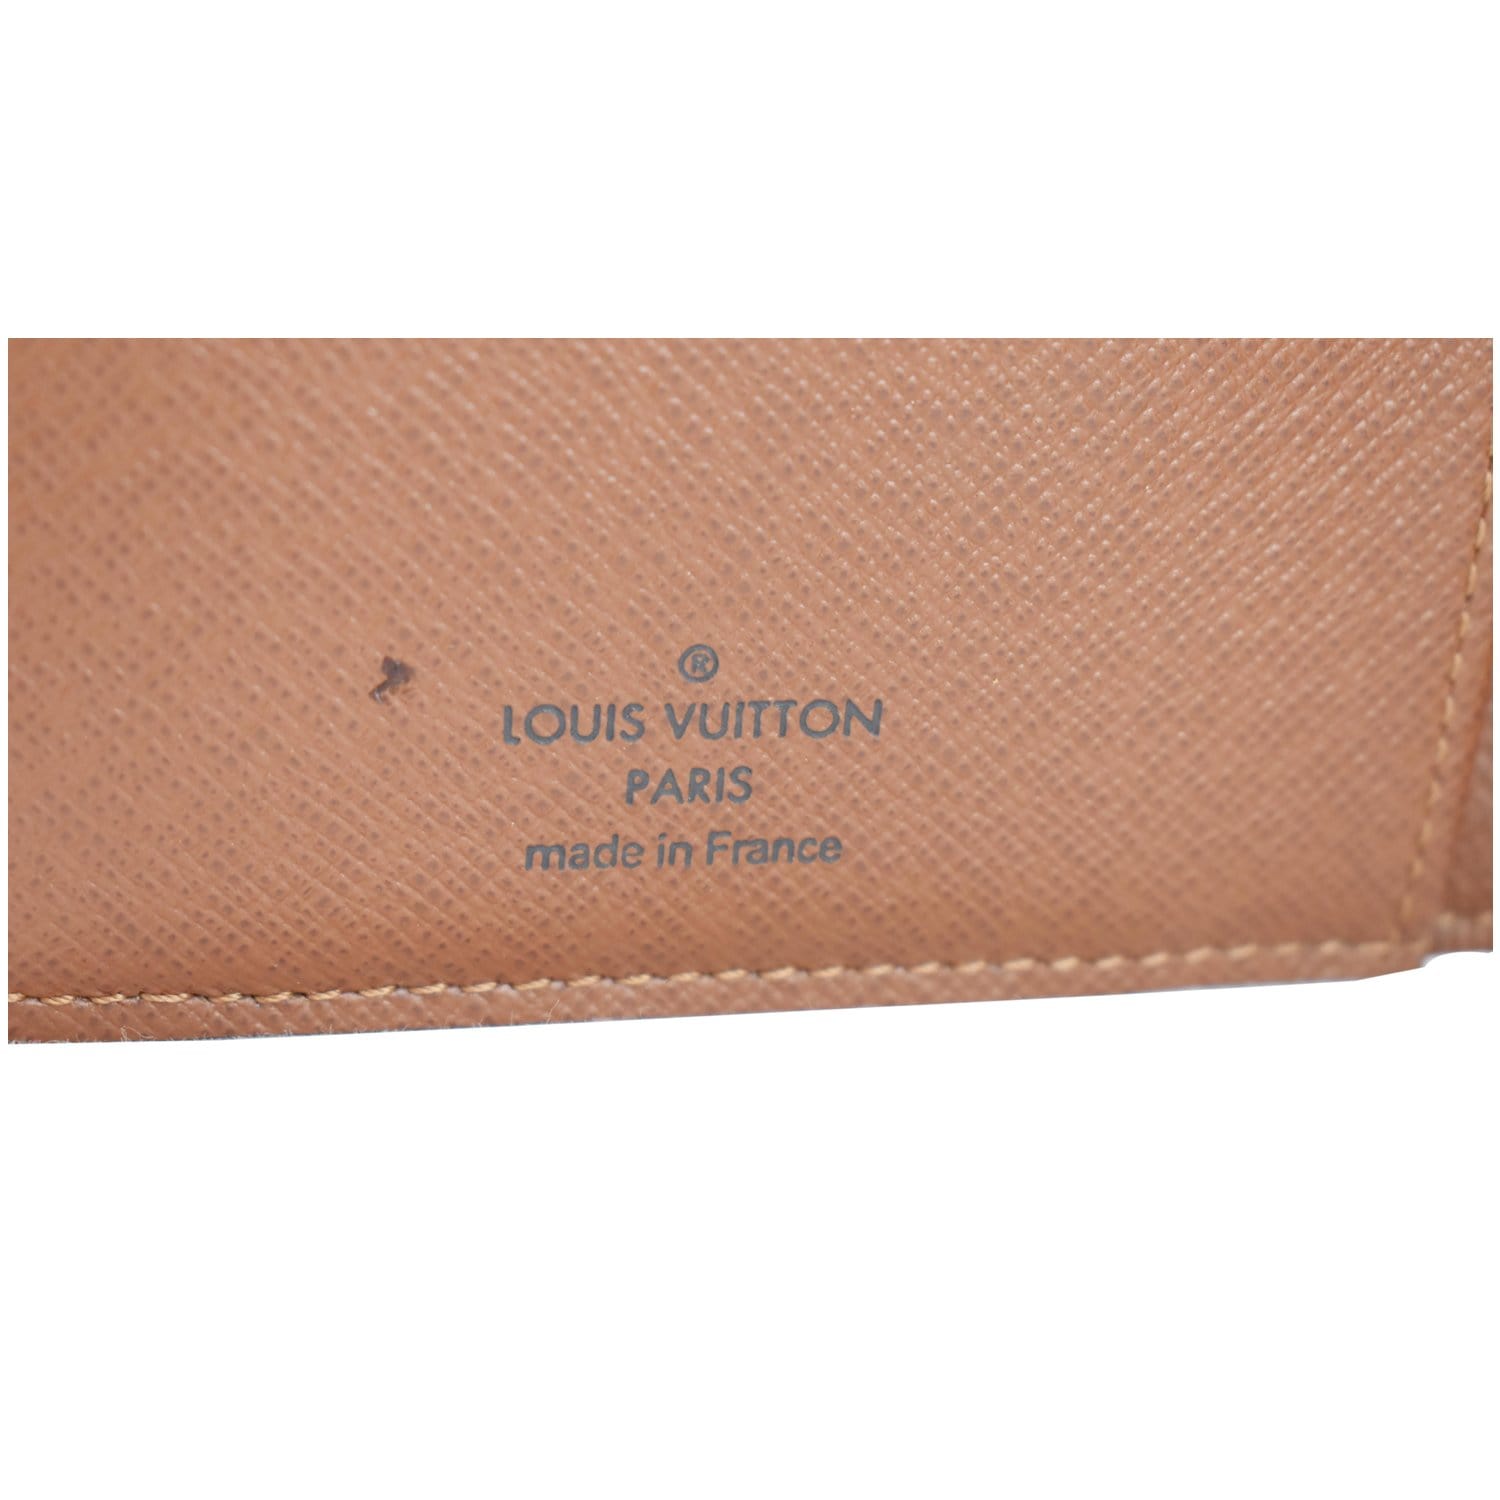 ป้ายยา Louisvuitton wallet on chains Ivy 🖤, Gallery posted by boʍz 🧸 ♪  🪞 🧺 ✨